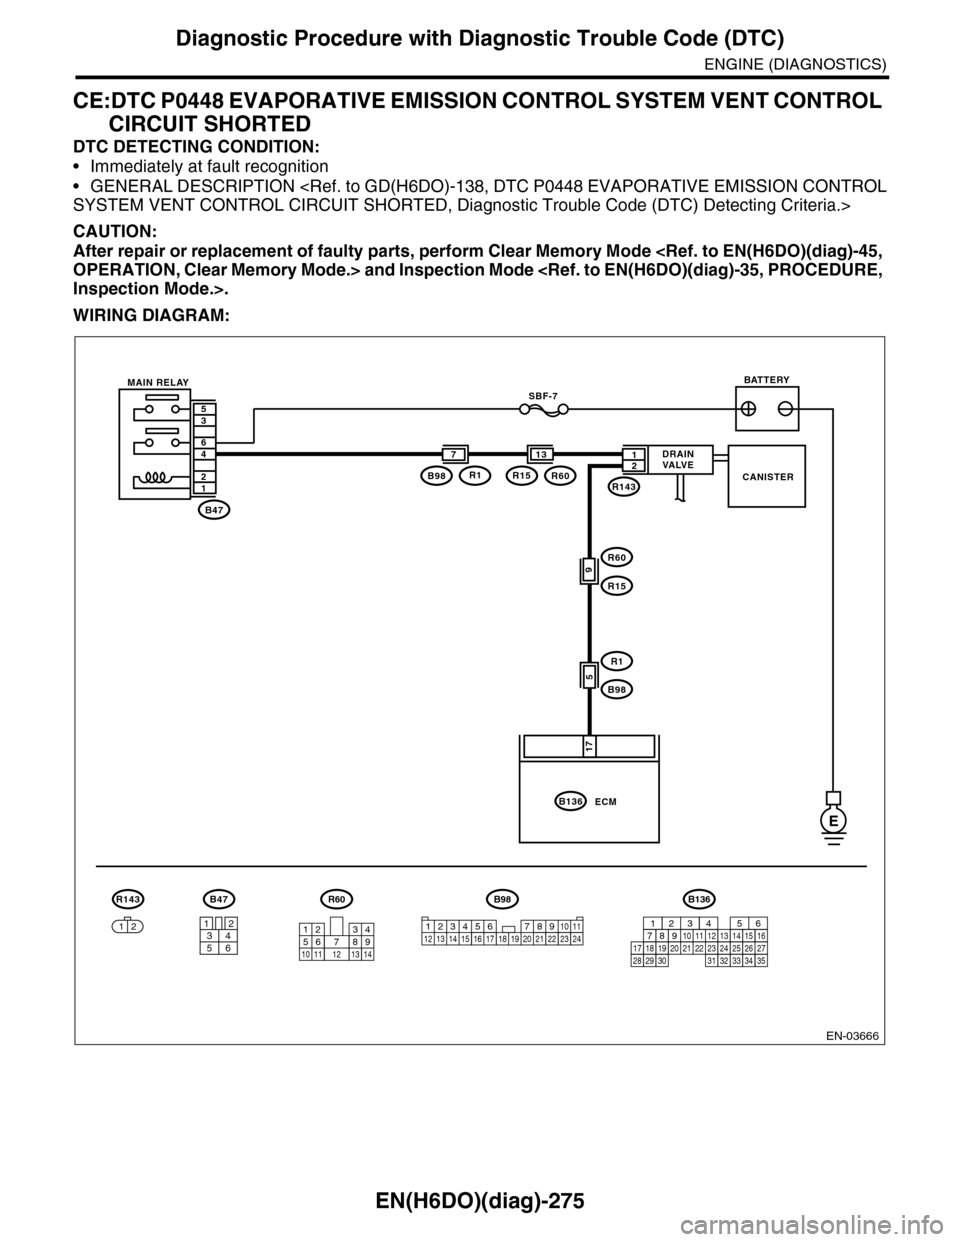 SUBARU TRIBECA 2009 1.G Service Workshop Manual EN(H6DO)(diag)-275
Diagnostic Procedure with Diagnostic Trouble Code (DTC)
ENGINE (DIAGNOSTICS)
CE:DTC P0448 EVAPORATIVE EMISSION CONTROL SYSTEM VENT CONTROL 
CIRCUIT SHORTED
DTC DETECTING CONDITION:
